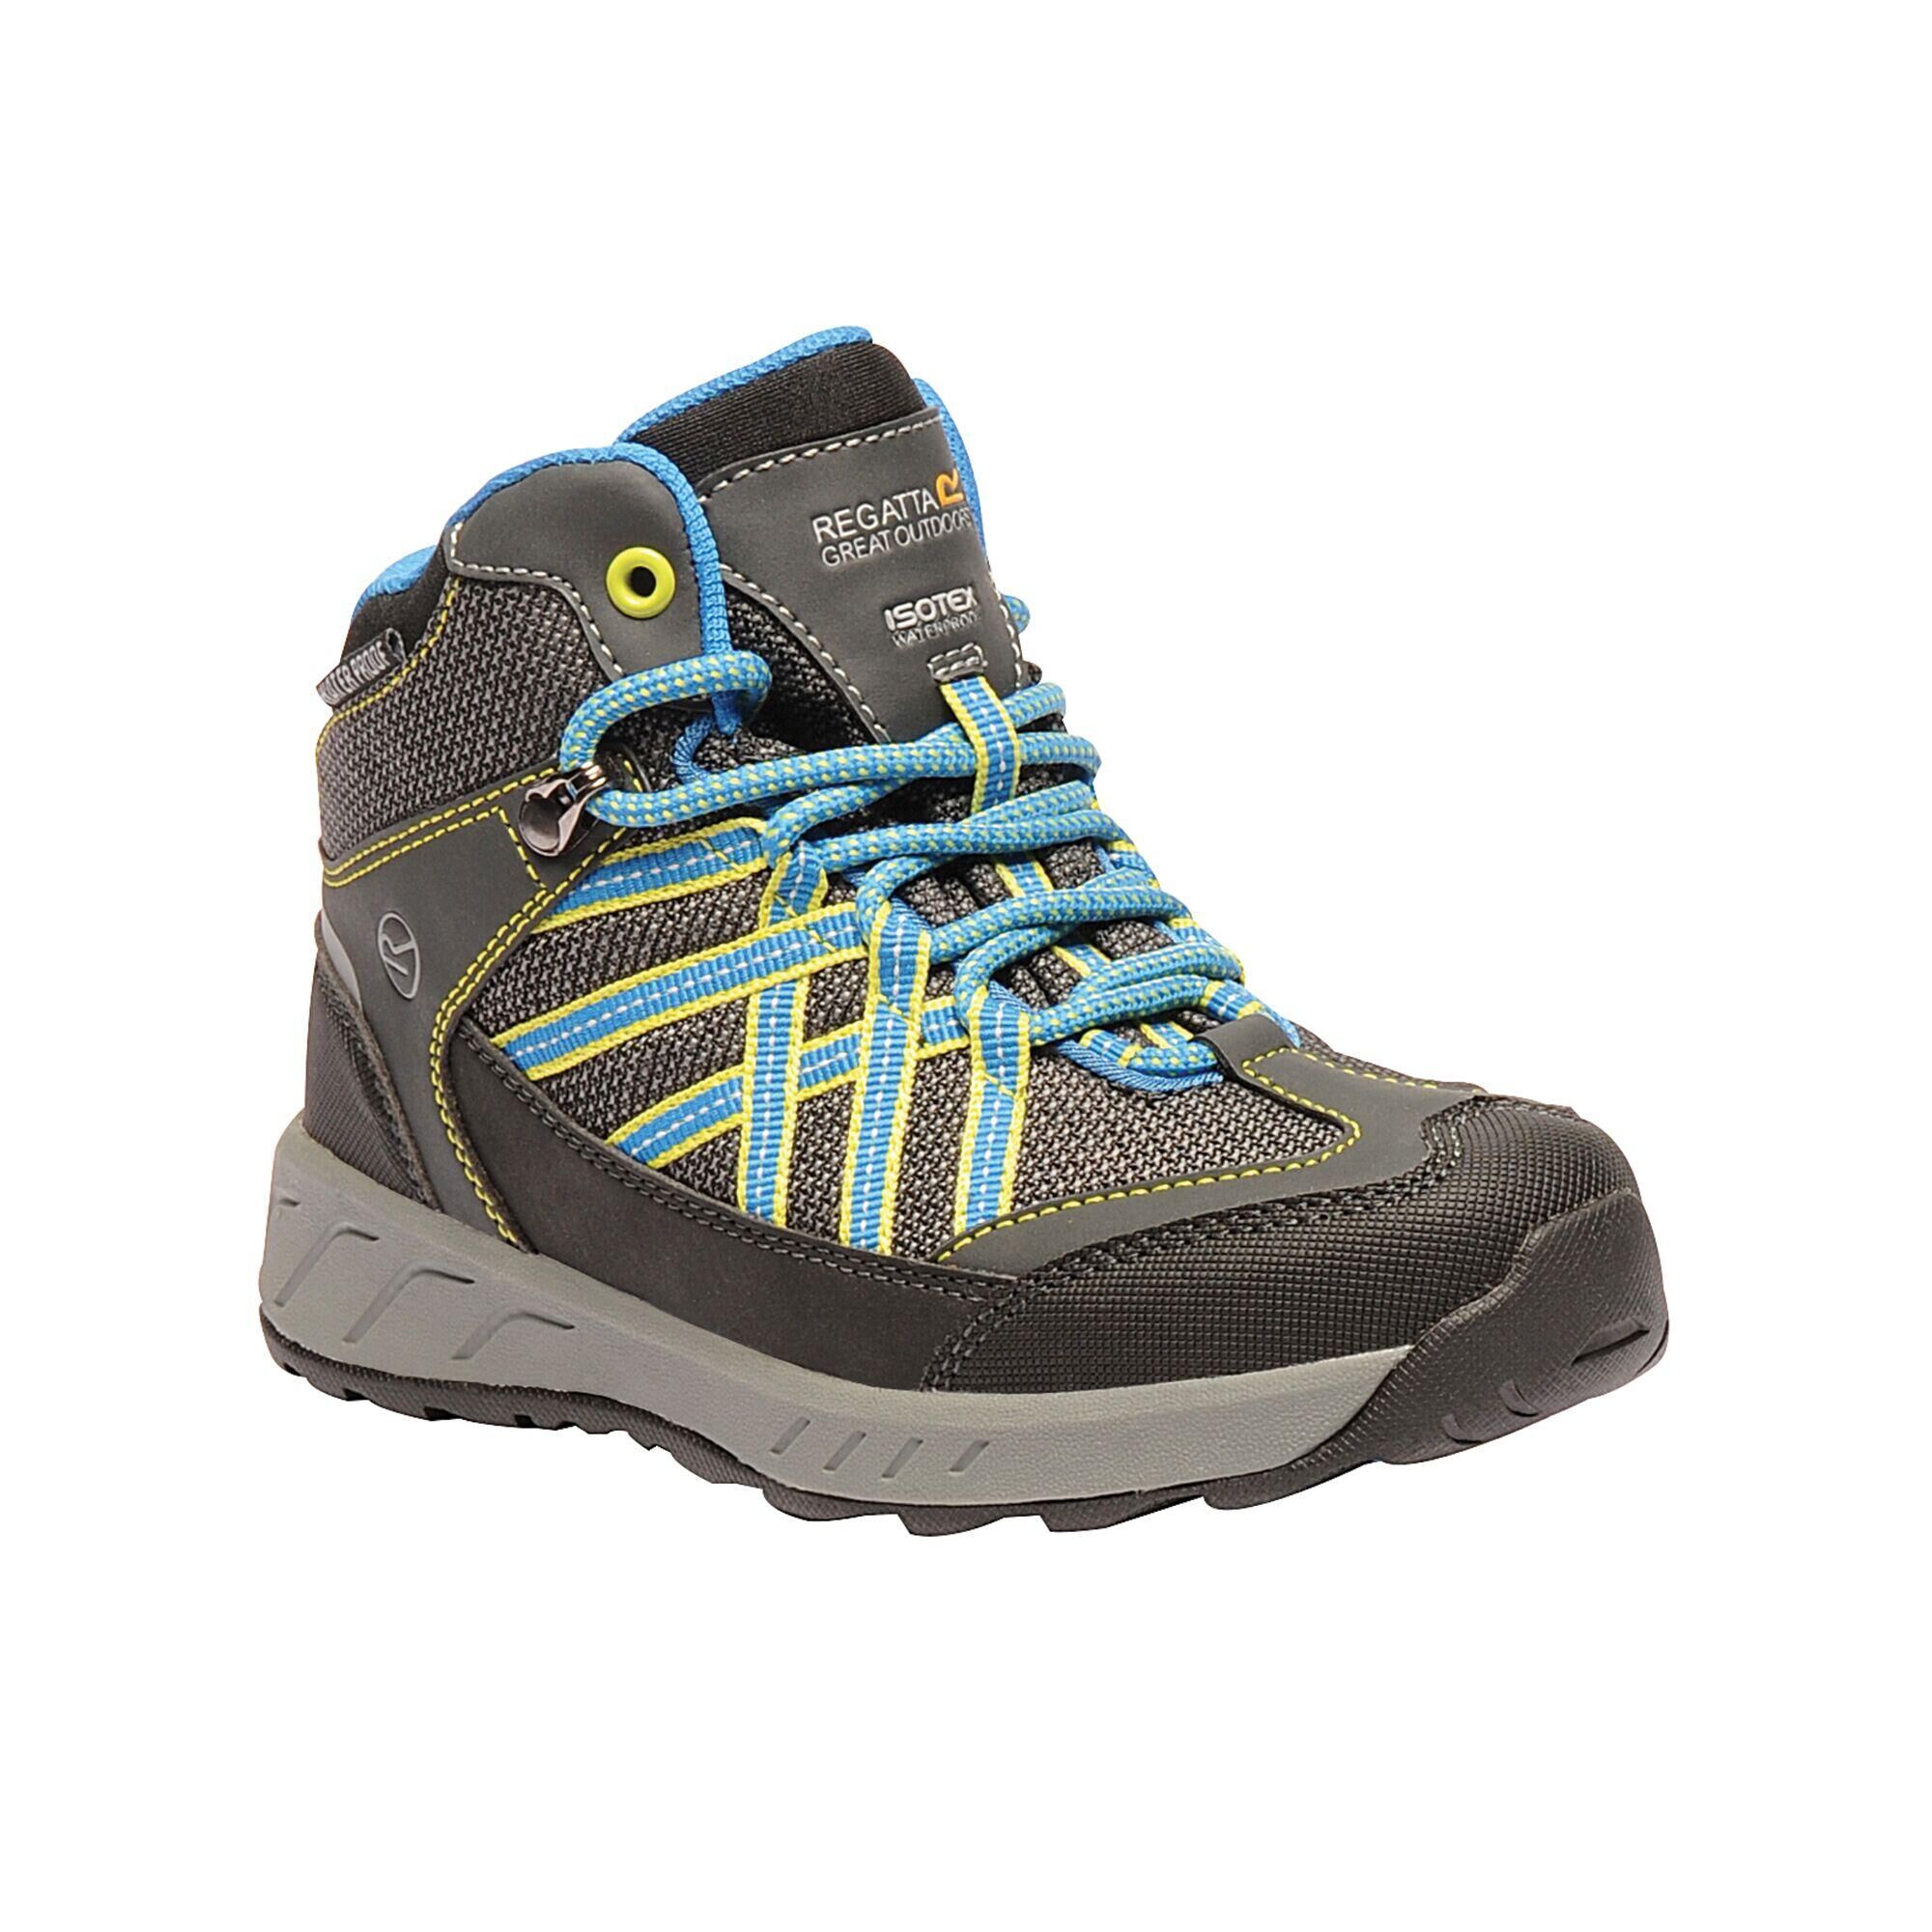 REGATTA Samaris Kids' Hiking Waterproof Mid Boots - Grey/Blue